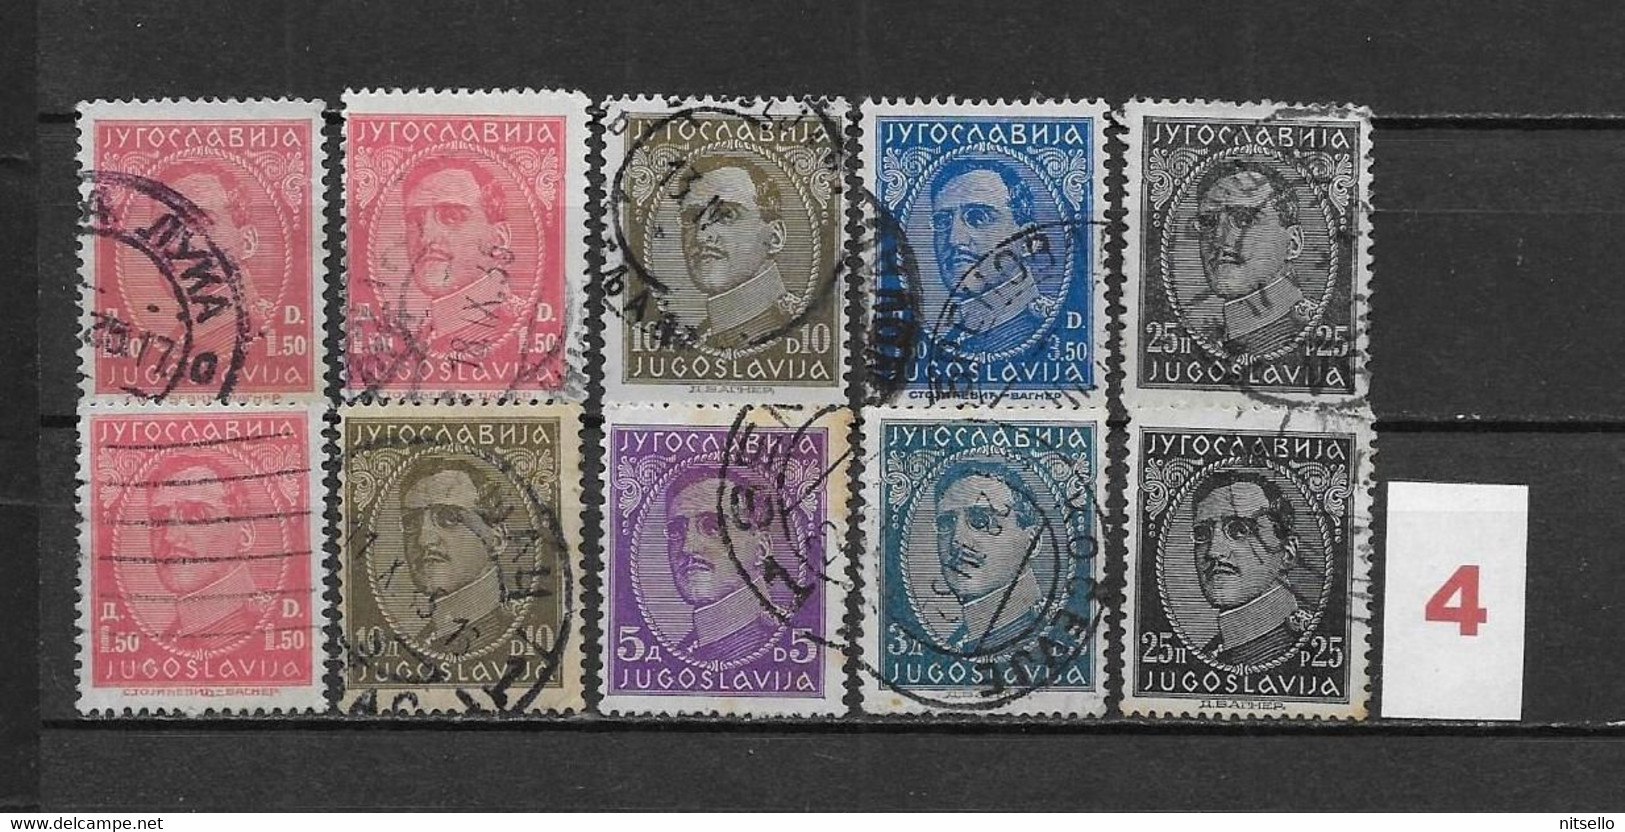 LOTE 1614  ///  YUGOSLAVIA 1931  LOTE  ¡¡¡ LIQUIDATION - JE LIQUIDE - LIQUIDACIÓN !!!! - Used Stamps